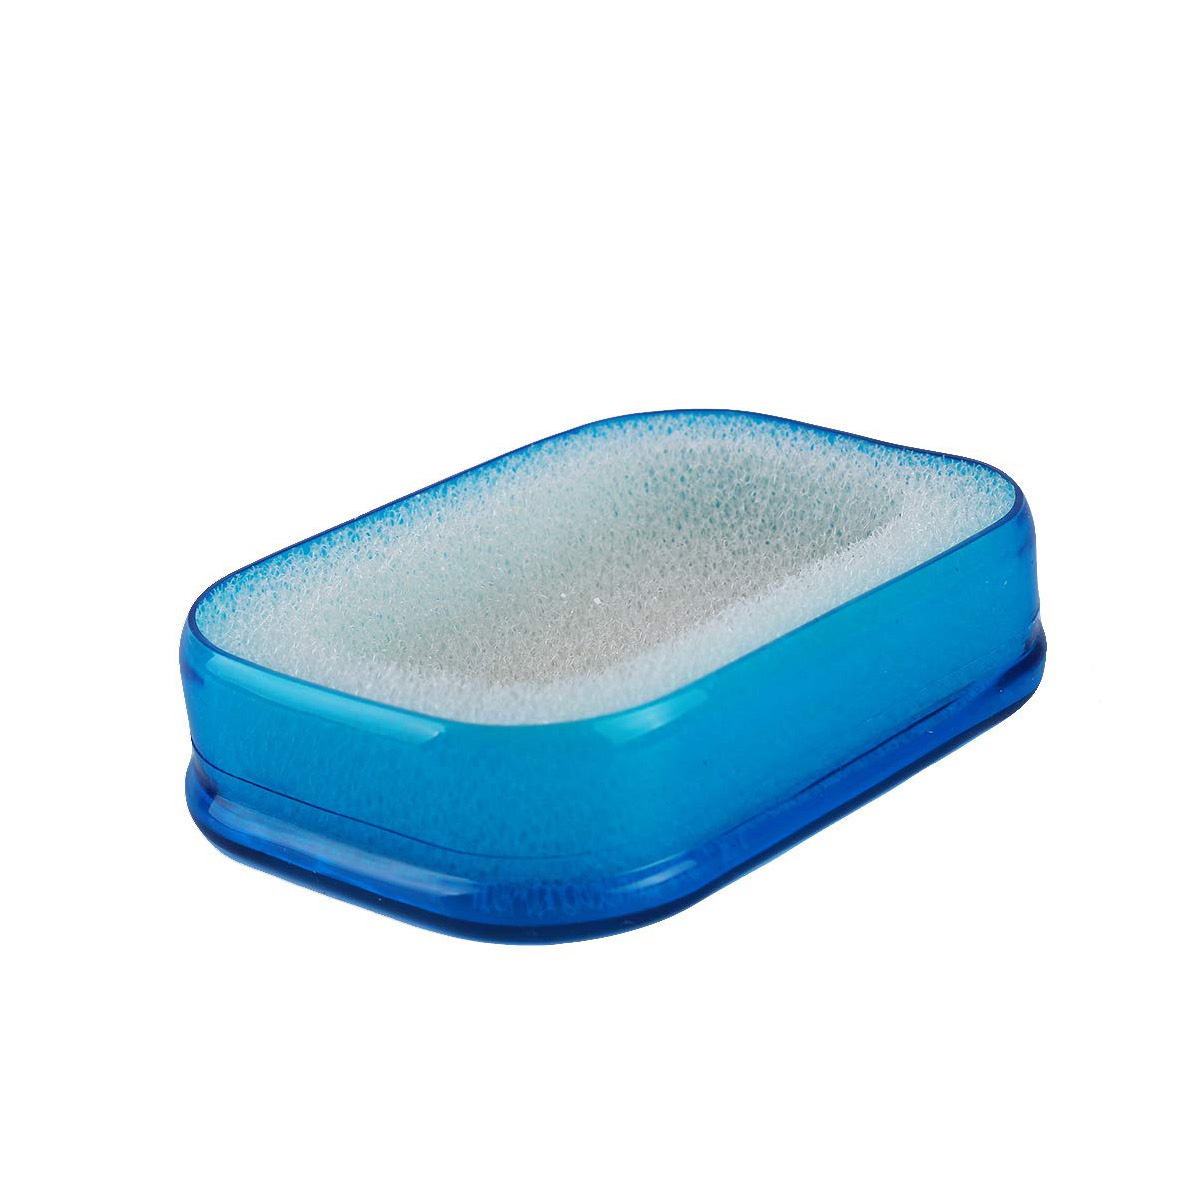 Мультифункциональная губка мыльница в силиконовой коробке, синий, BH-ASH-03